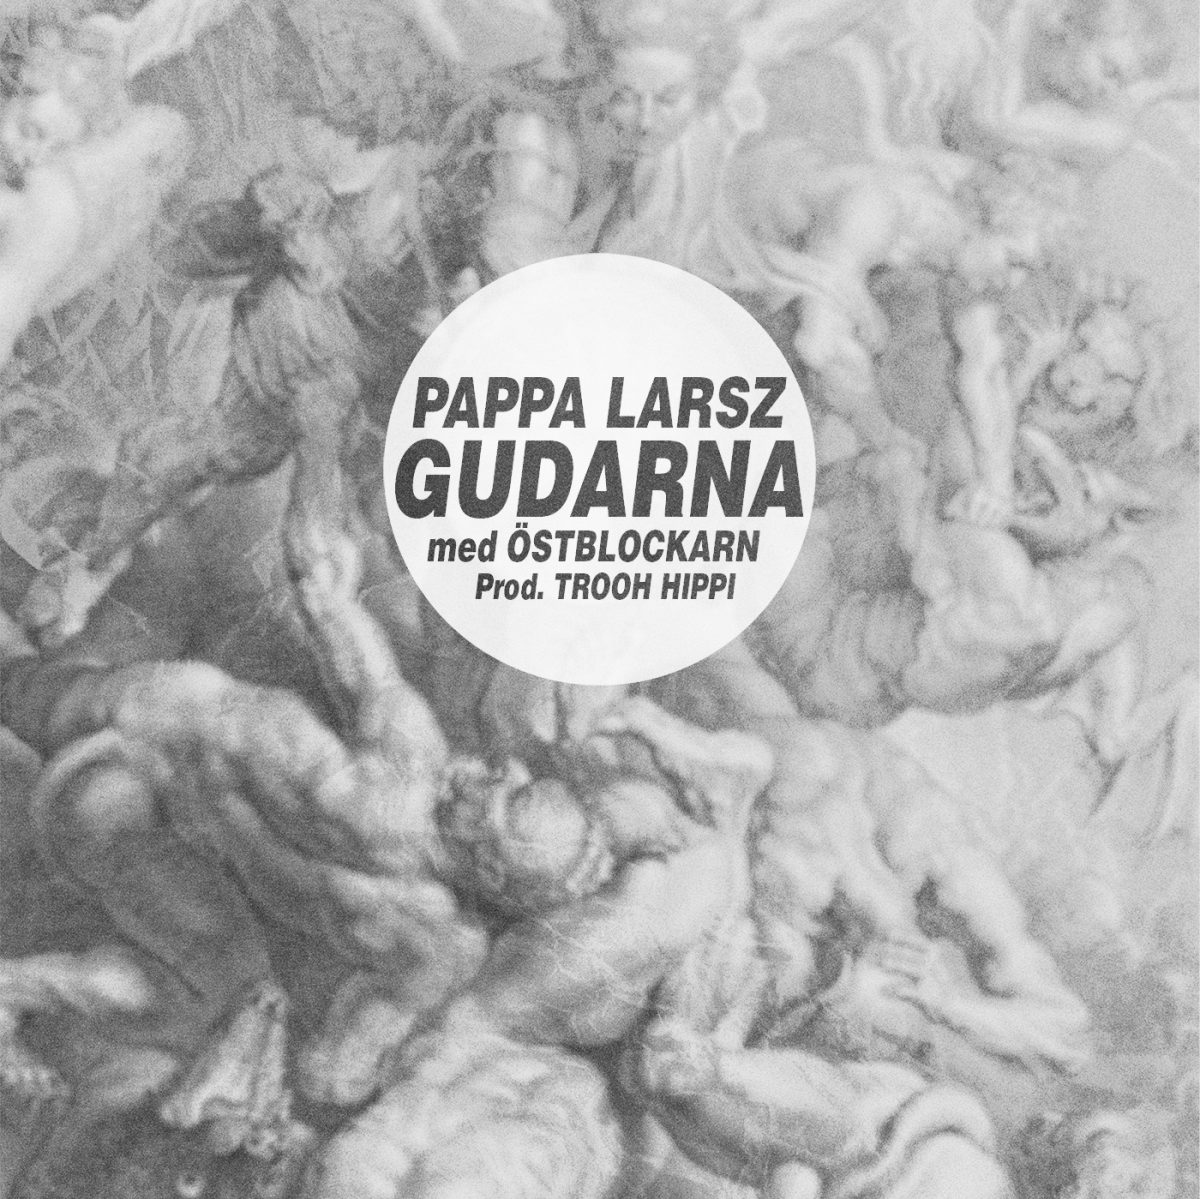 Exklusivt: Pappa Larsz med Östblockarn –  Gudarna (MP3)